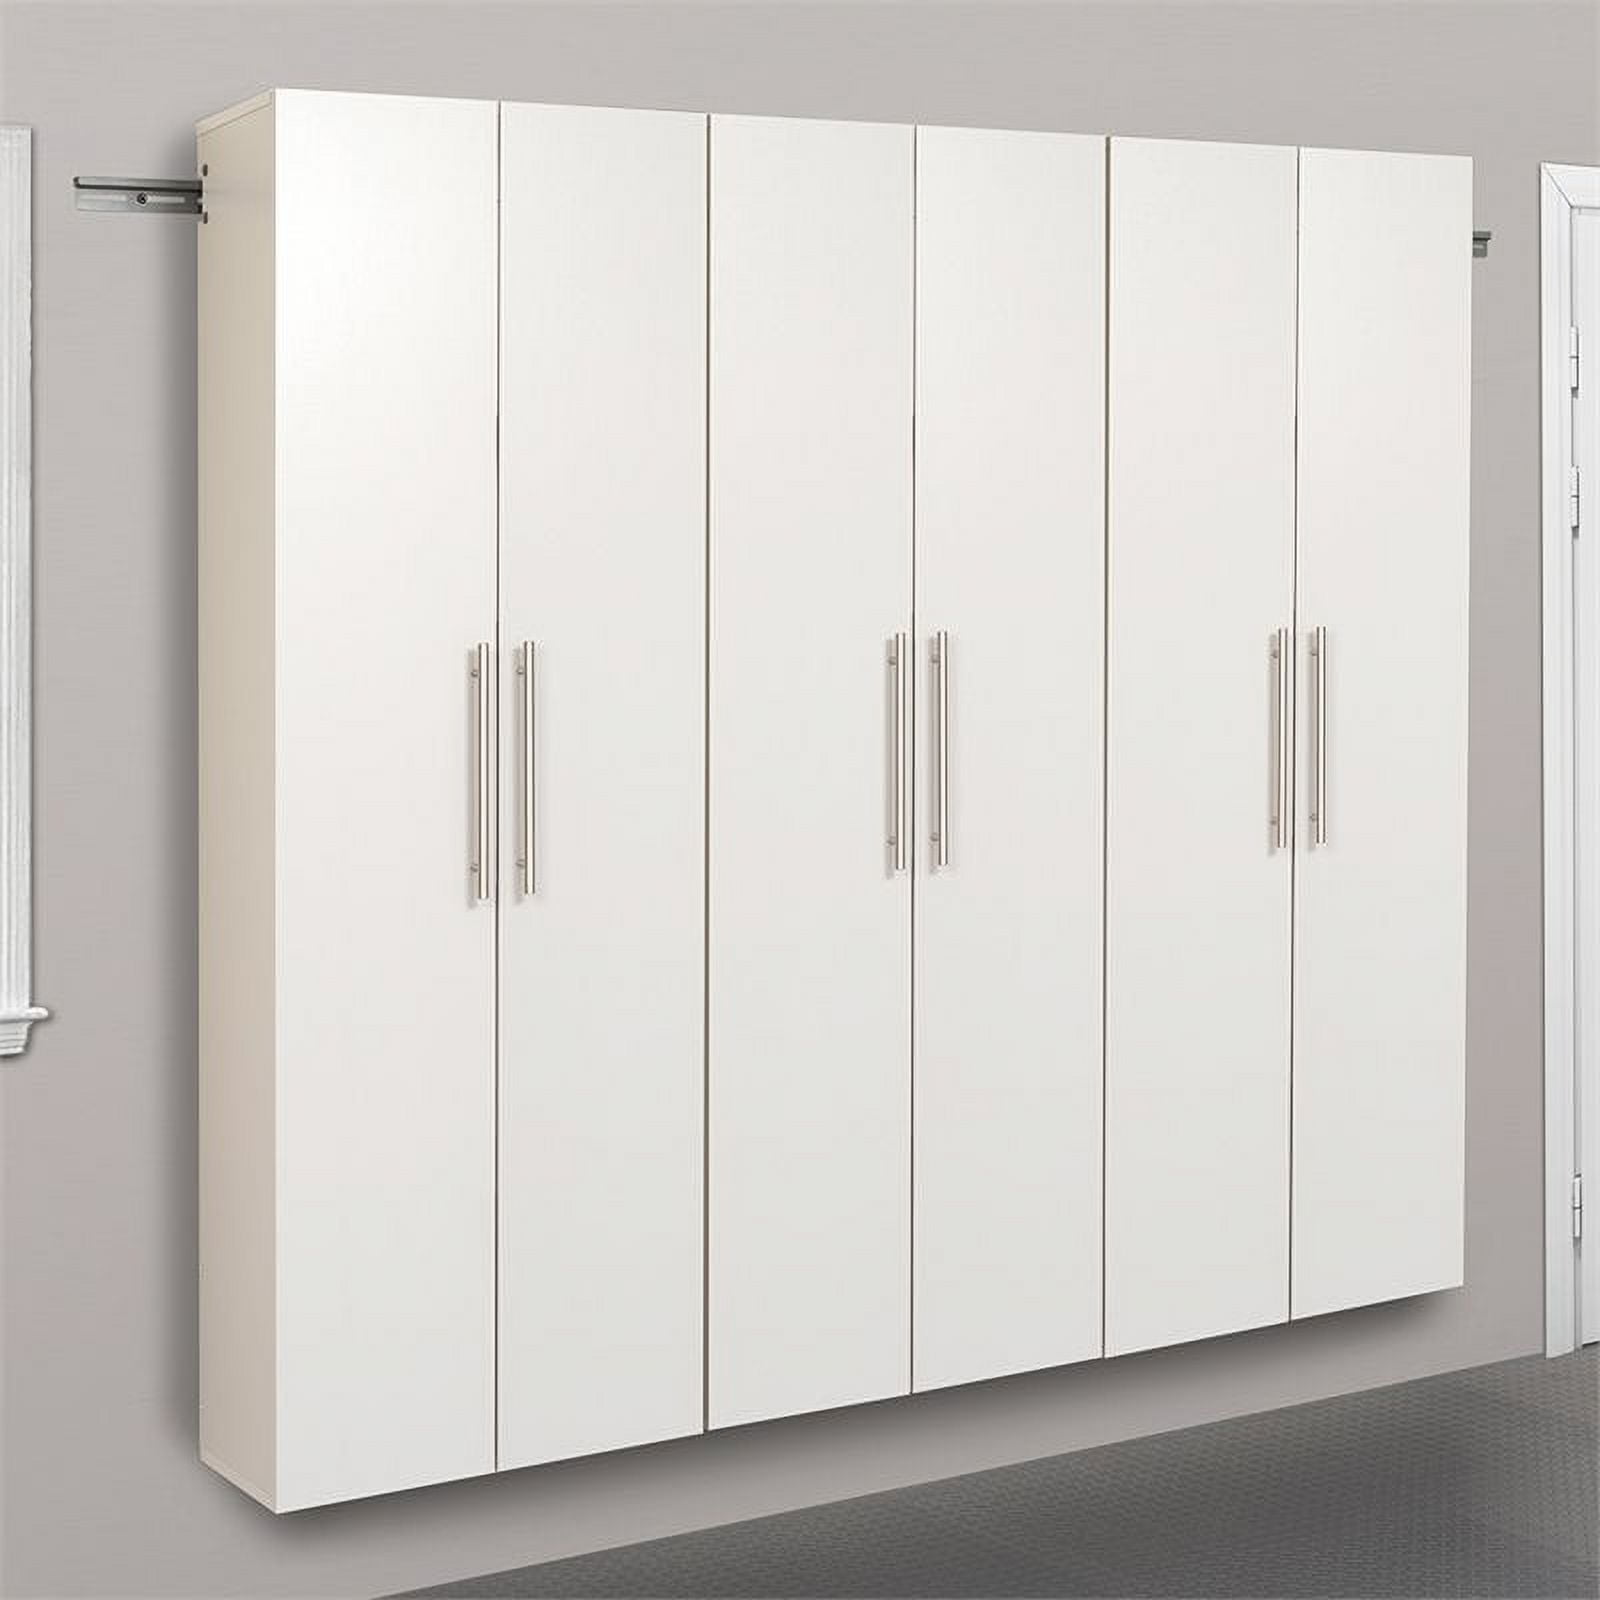 Decorative Storage Cabinet | Wayfair